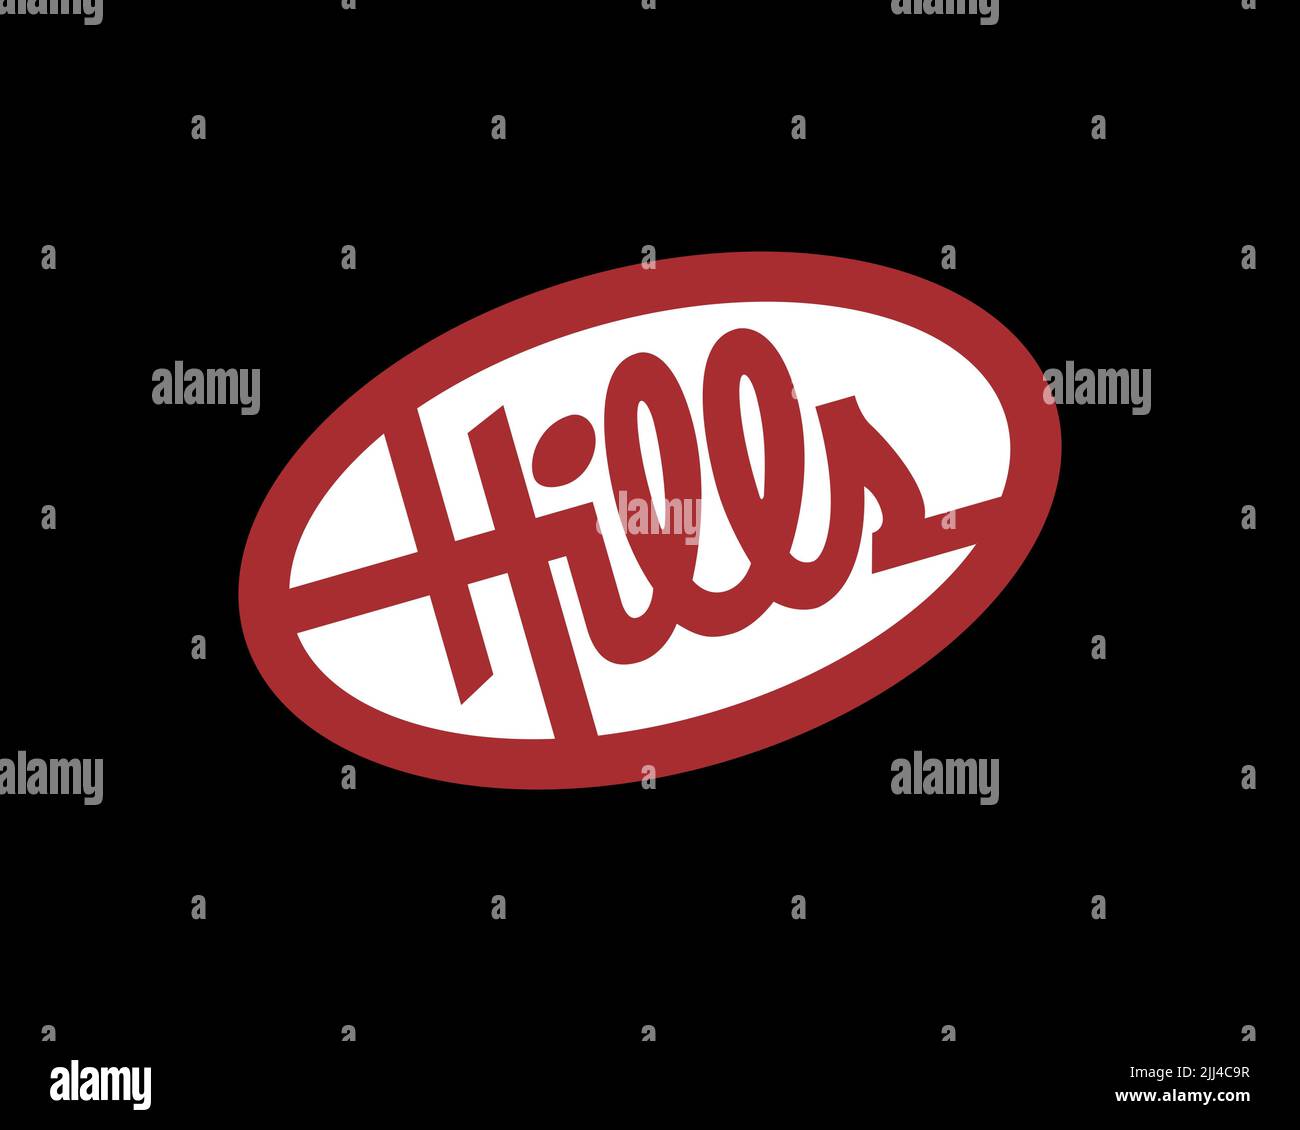 Hills store, gedrehtes Logo, Schwarzer Hintergrund Stock Photo - Alamy